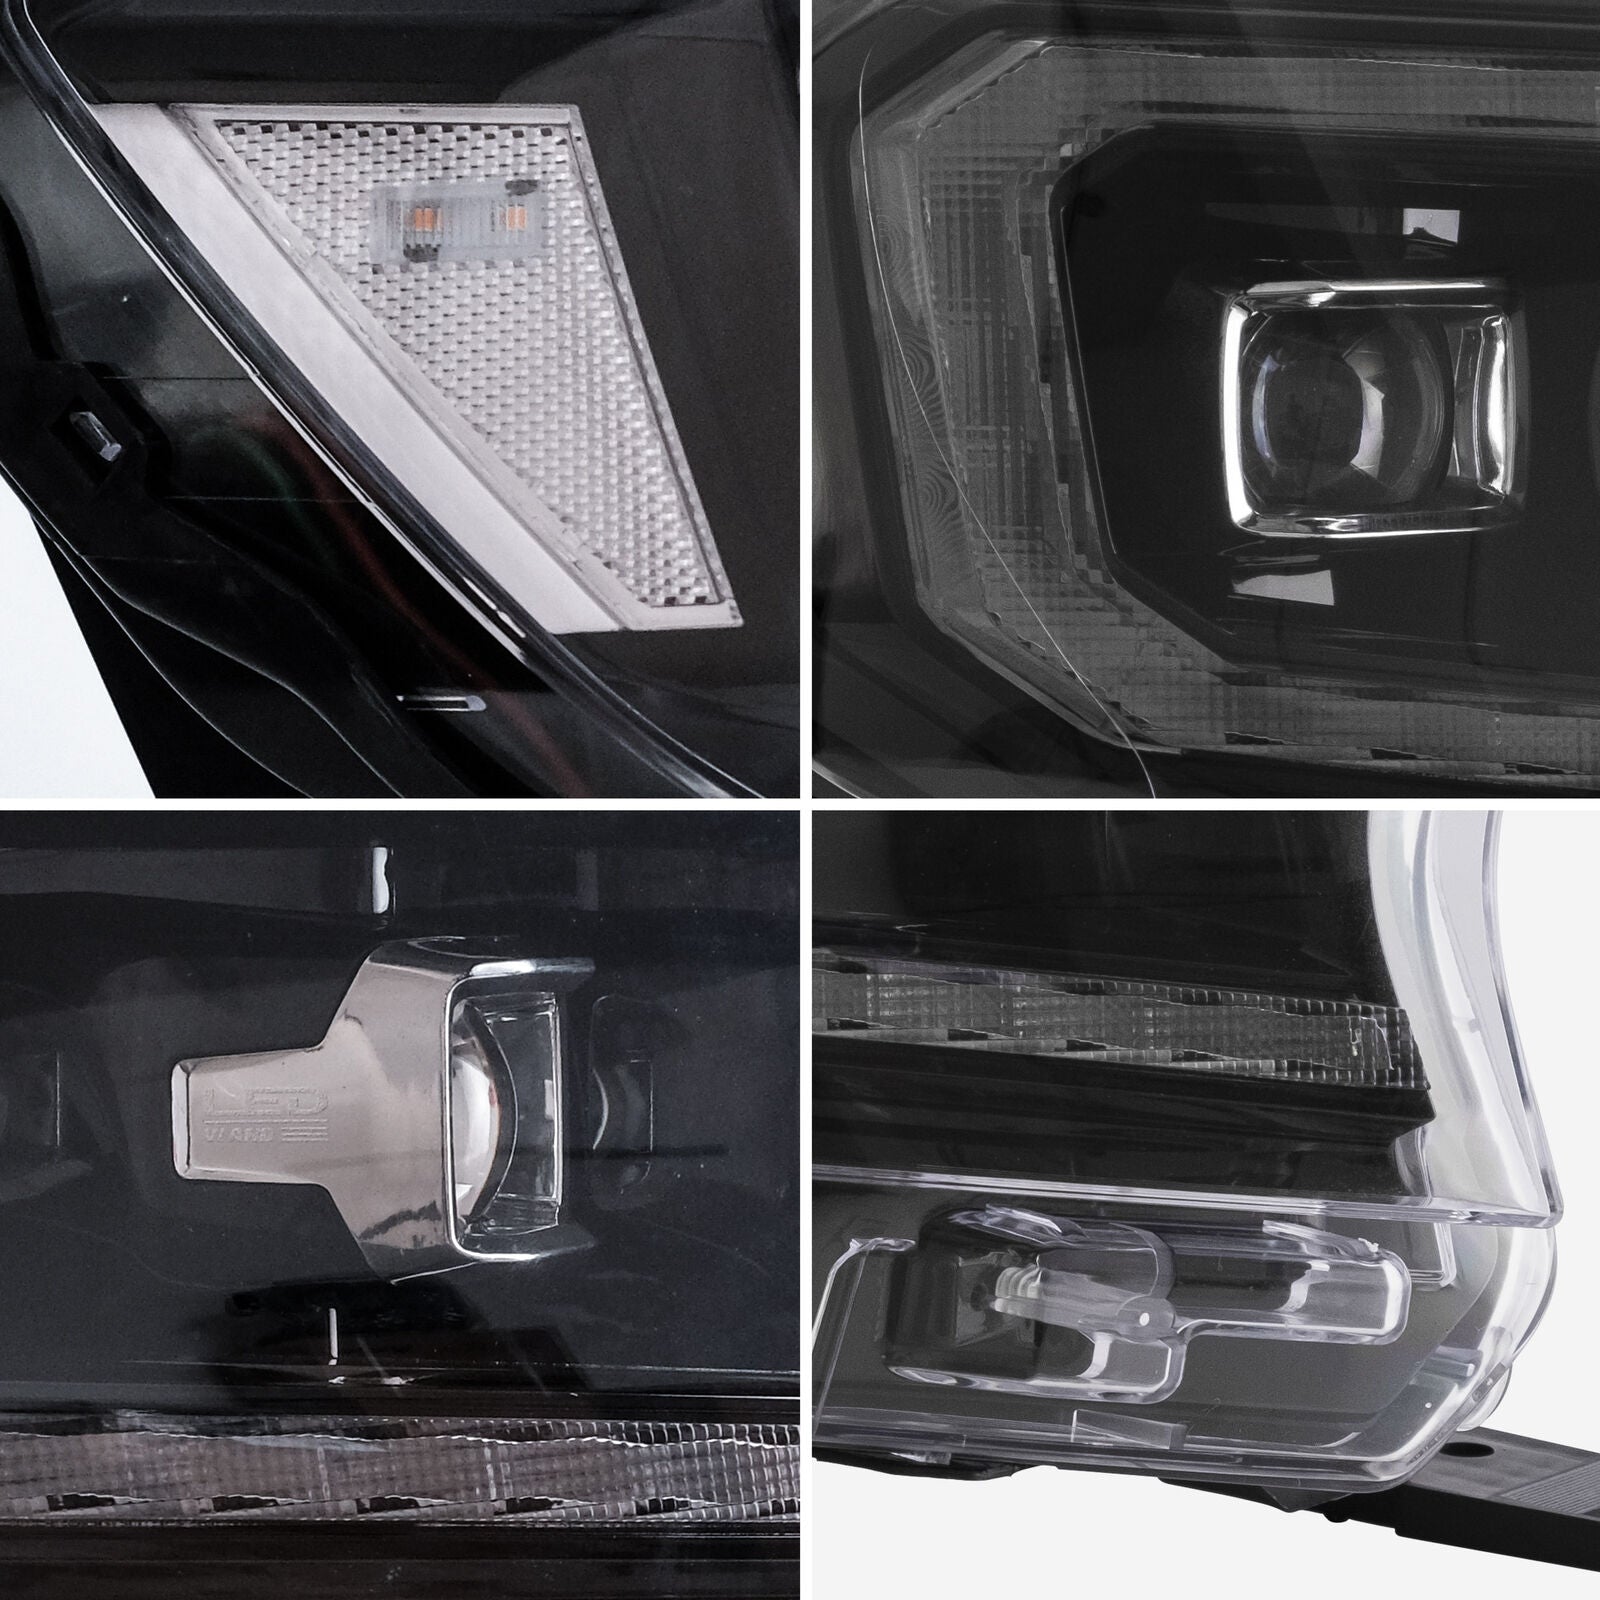 NEU LED Scheinwerfer Frontscheinwerfer für Ford Ranger (T6) Raptor Wildtrak 2015-2020